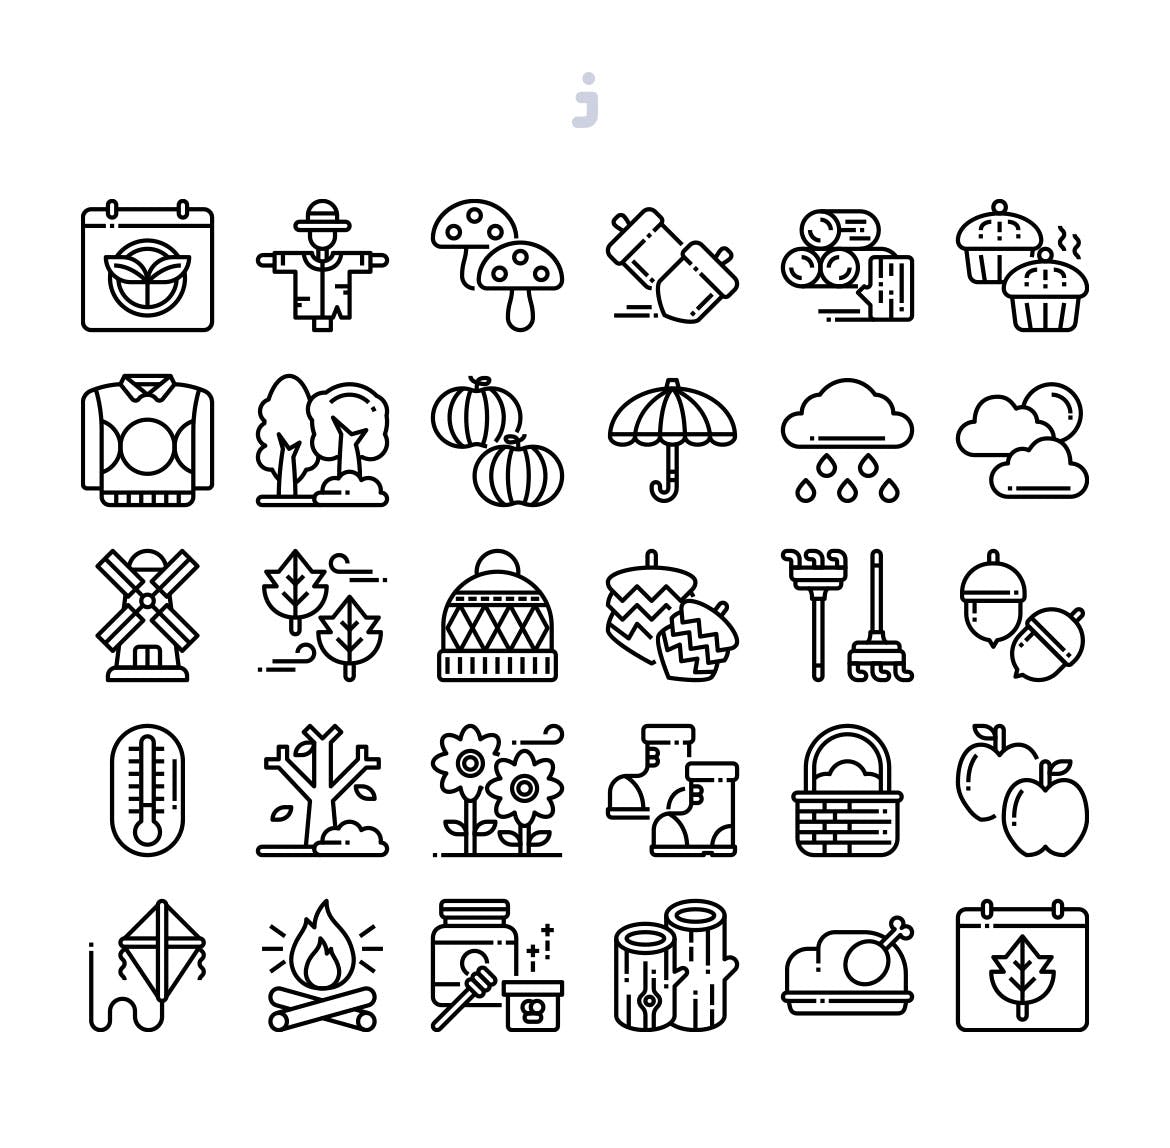 30枚秋天元素矢量图标素材 30 Autumn Season Icons插图(2)